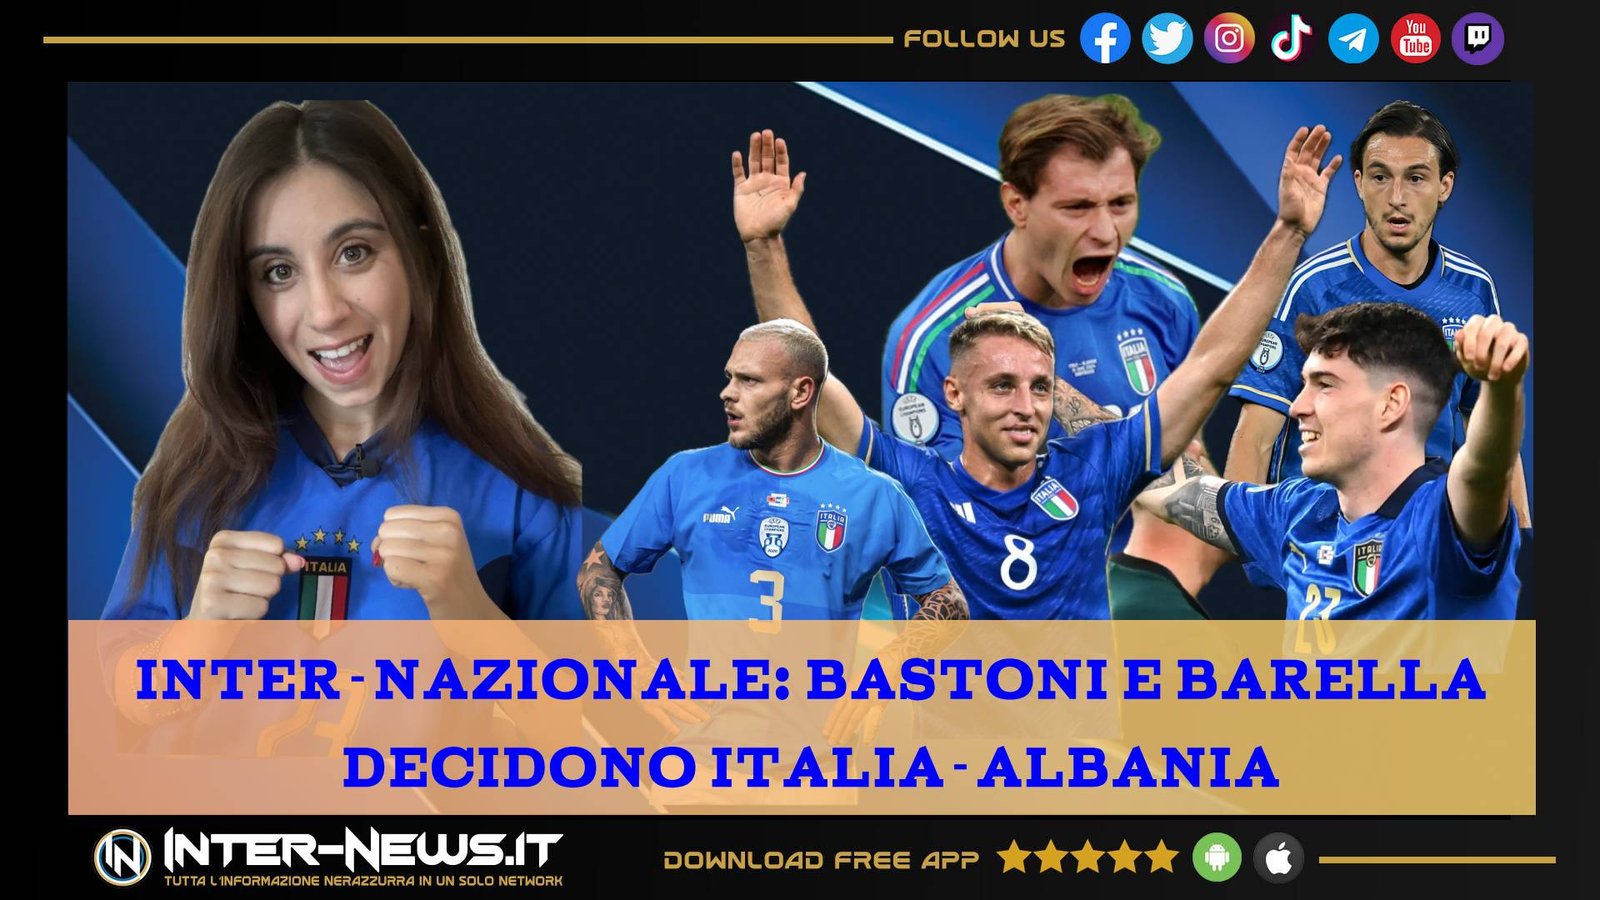 VIDEO – Inter Nazionale, Barella e Bastoni decidono Italia Albania | Inter News Web TV